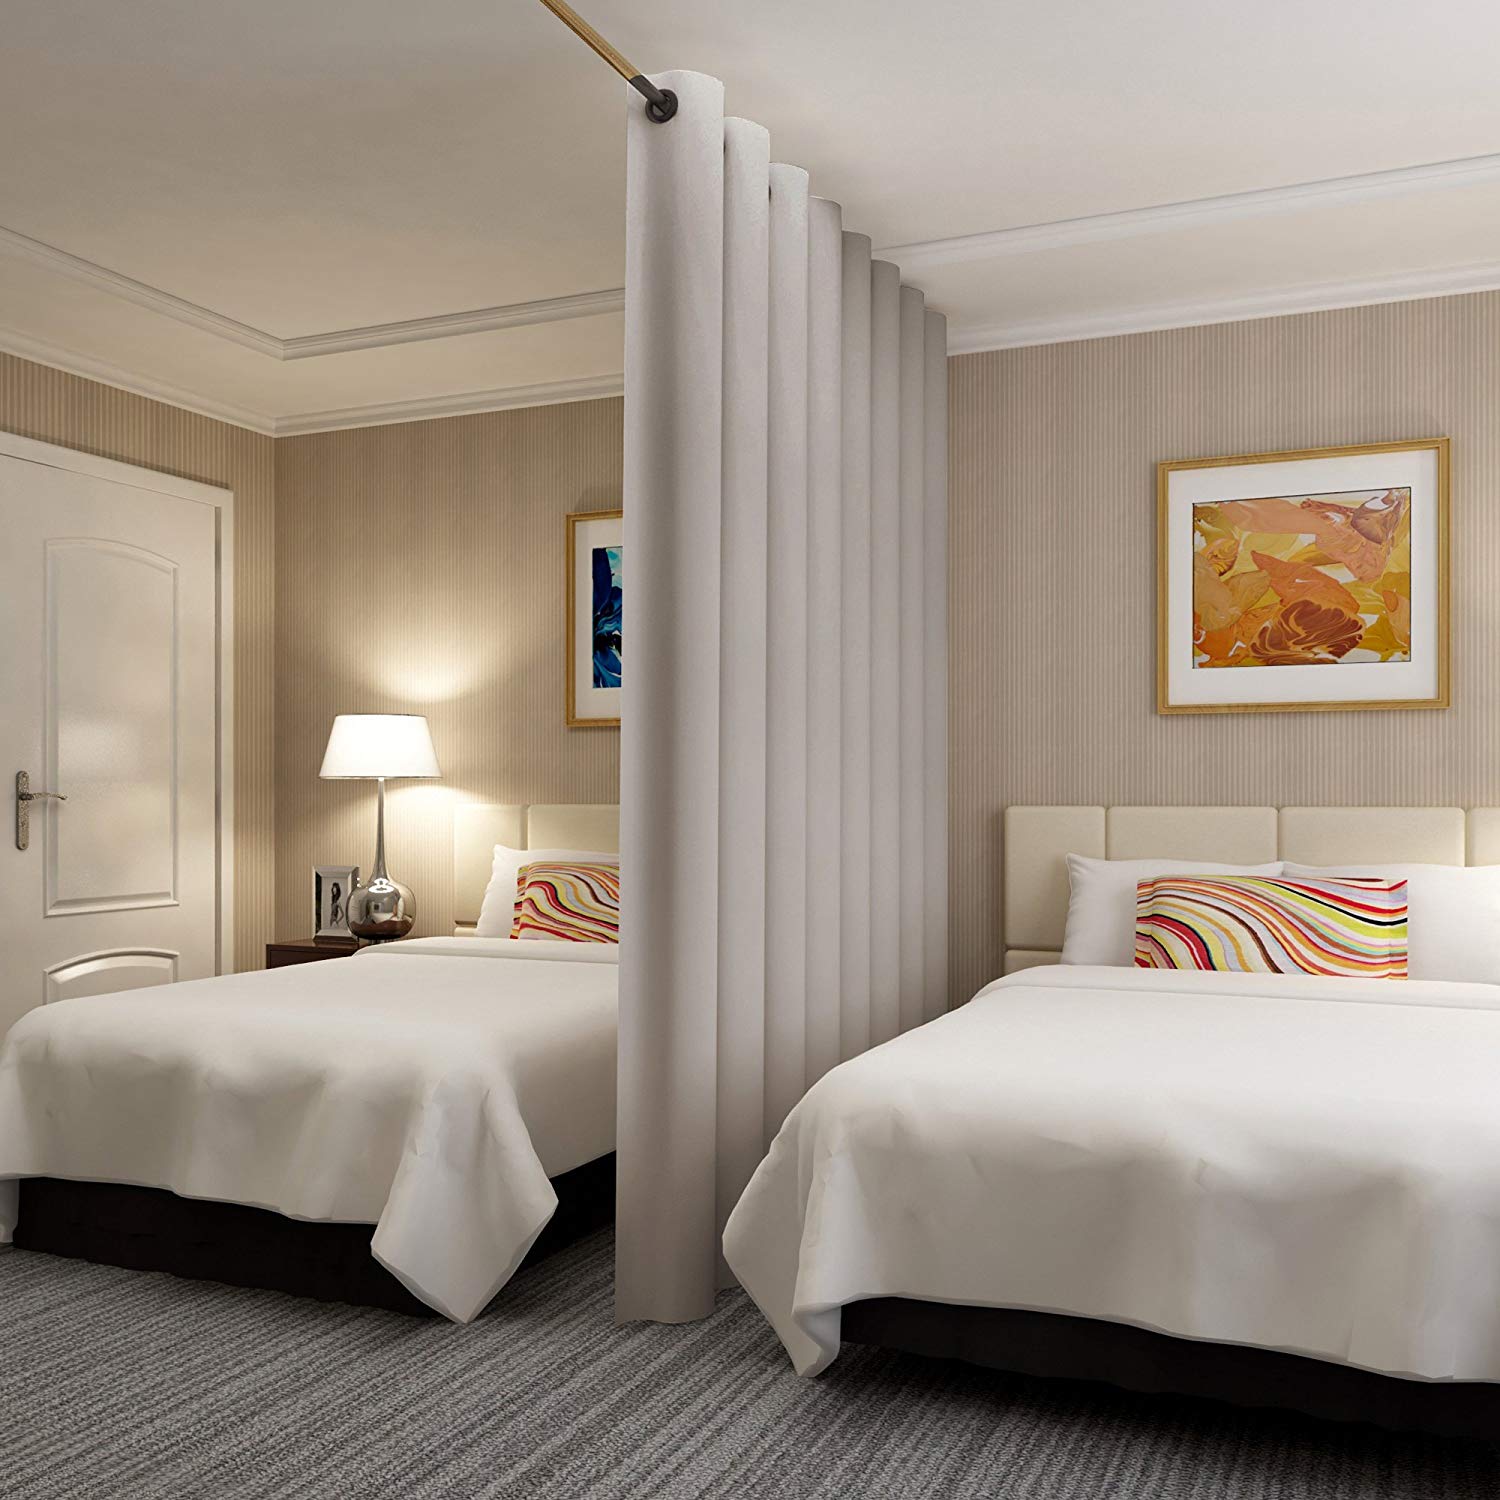 luxury dorm ideas, luxury dorm room, luxury dorm decor, luxury dorm decor ideas, luxury dorm tips